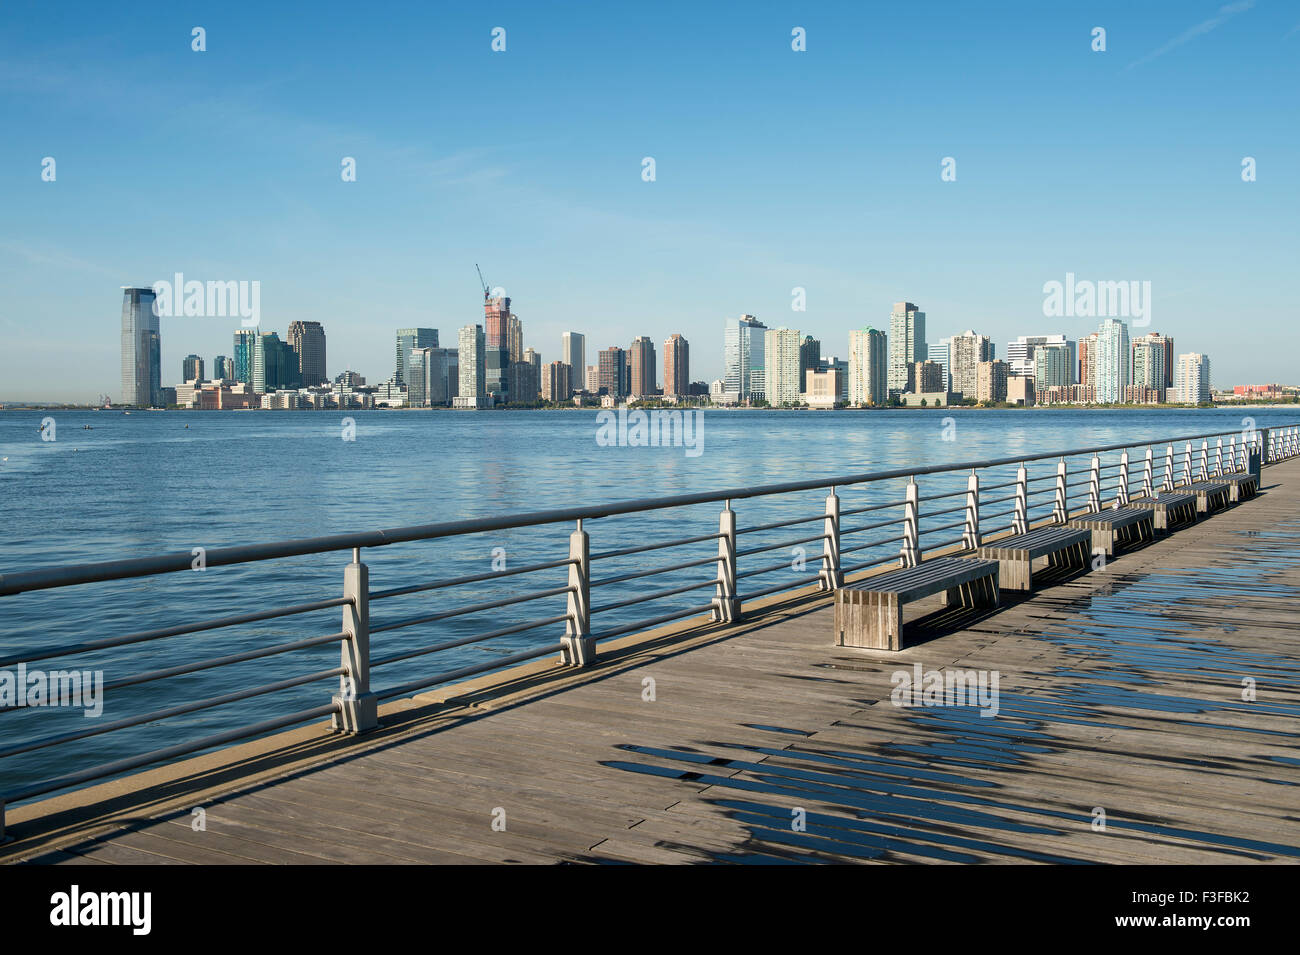 Skyline der Stadt von Jersey City und Hoboken New Jersey von einem Pier  über dem Wasser des Hudson River in New York City Stockfotografie - Alamy